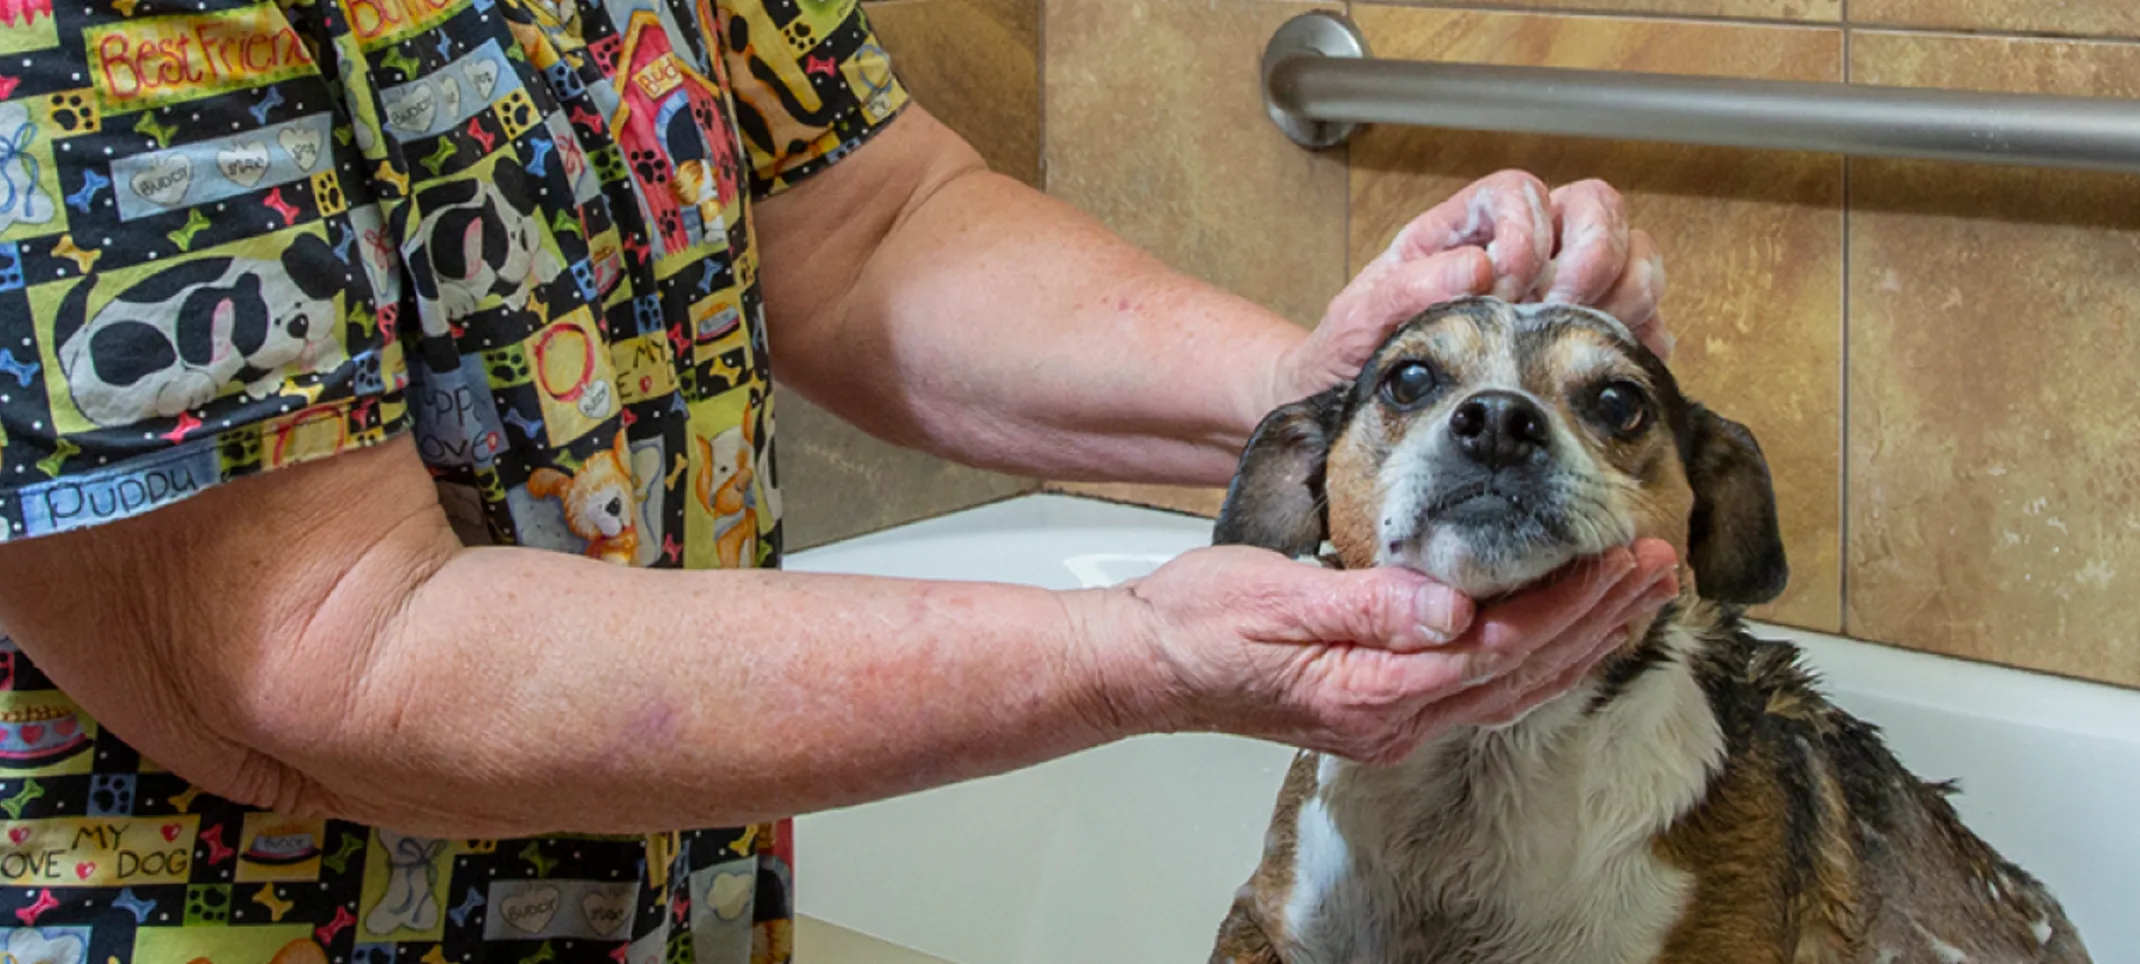 Dog getting a bath 